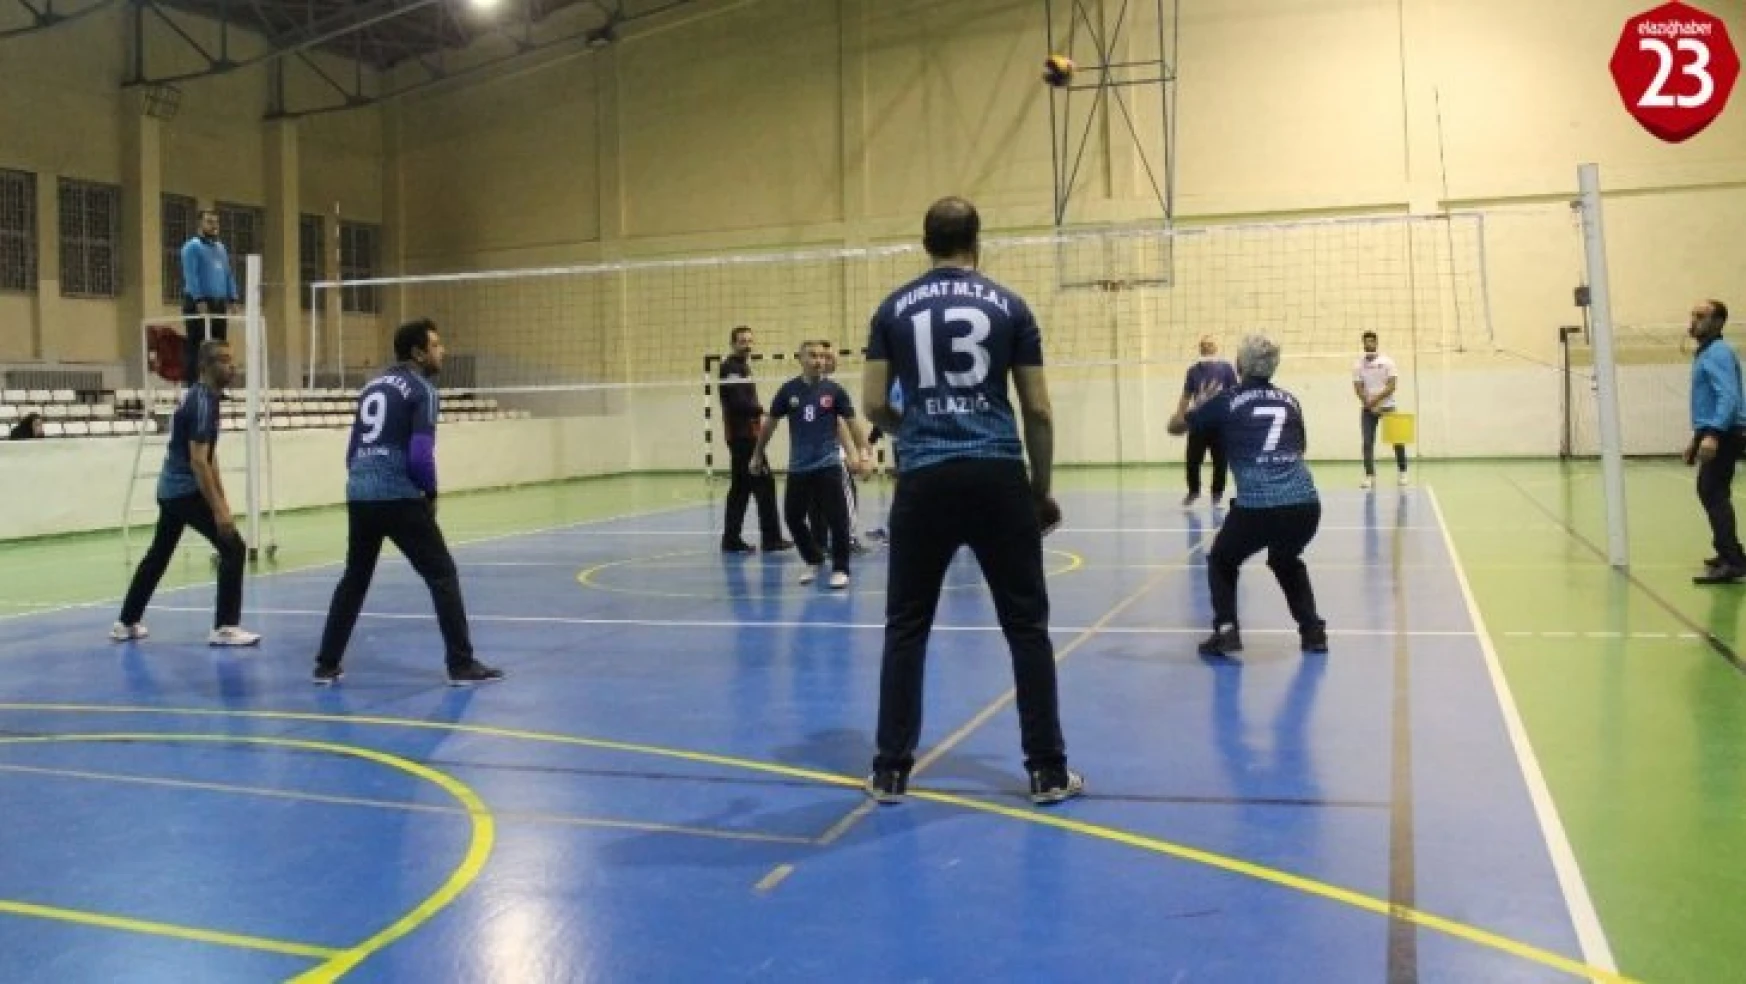 Elazığ'da Mehmet Akif İnan Anısına Voleybol Turnuvası